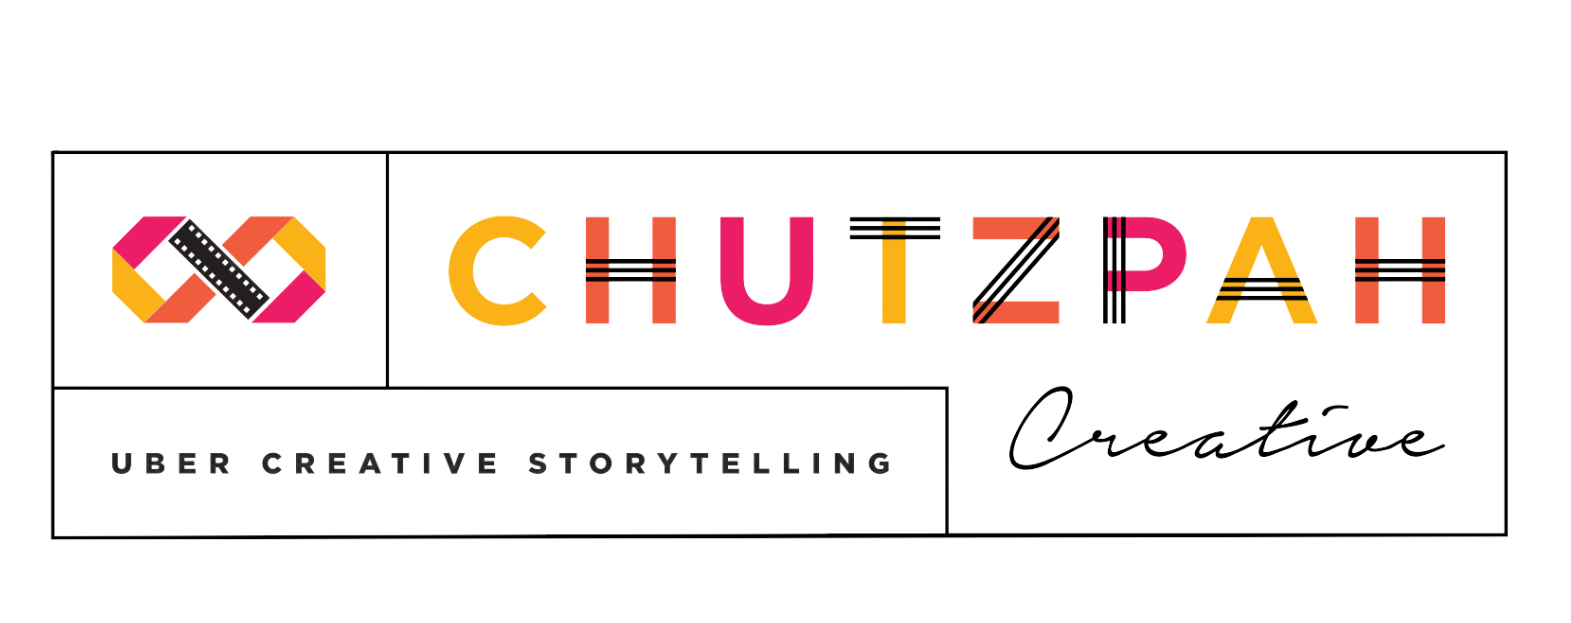 Homepage  The Art of Chutzpah